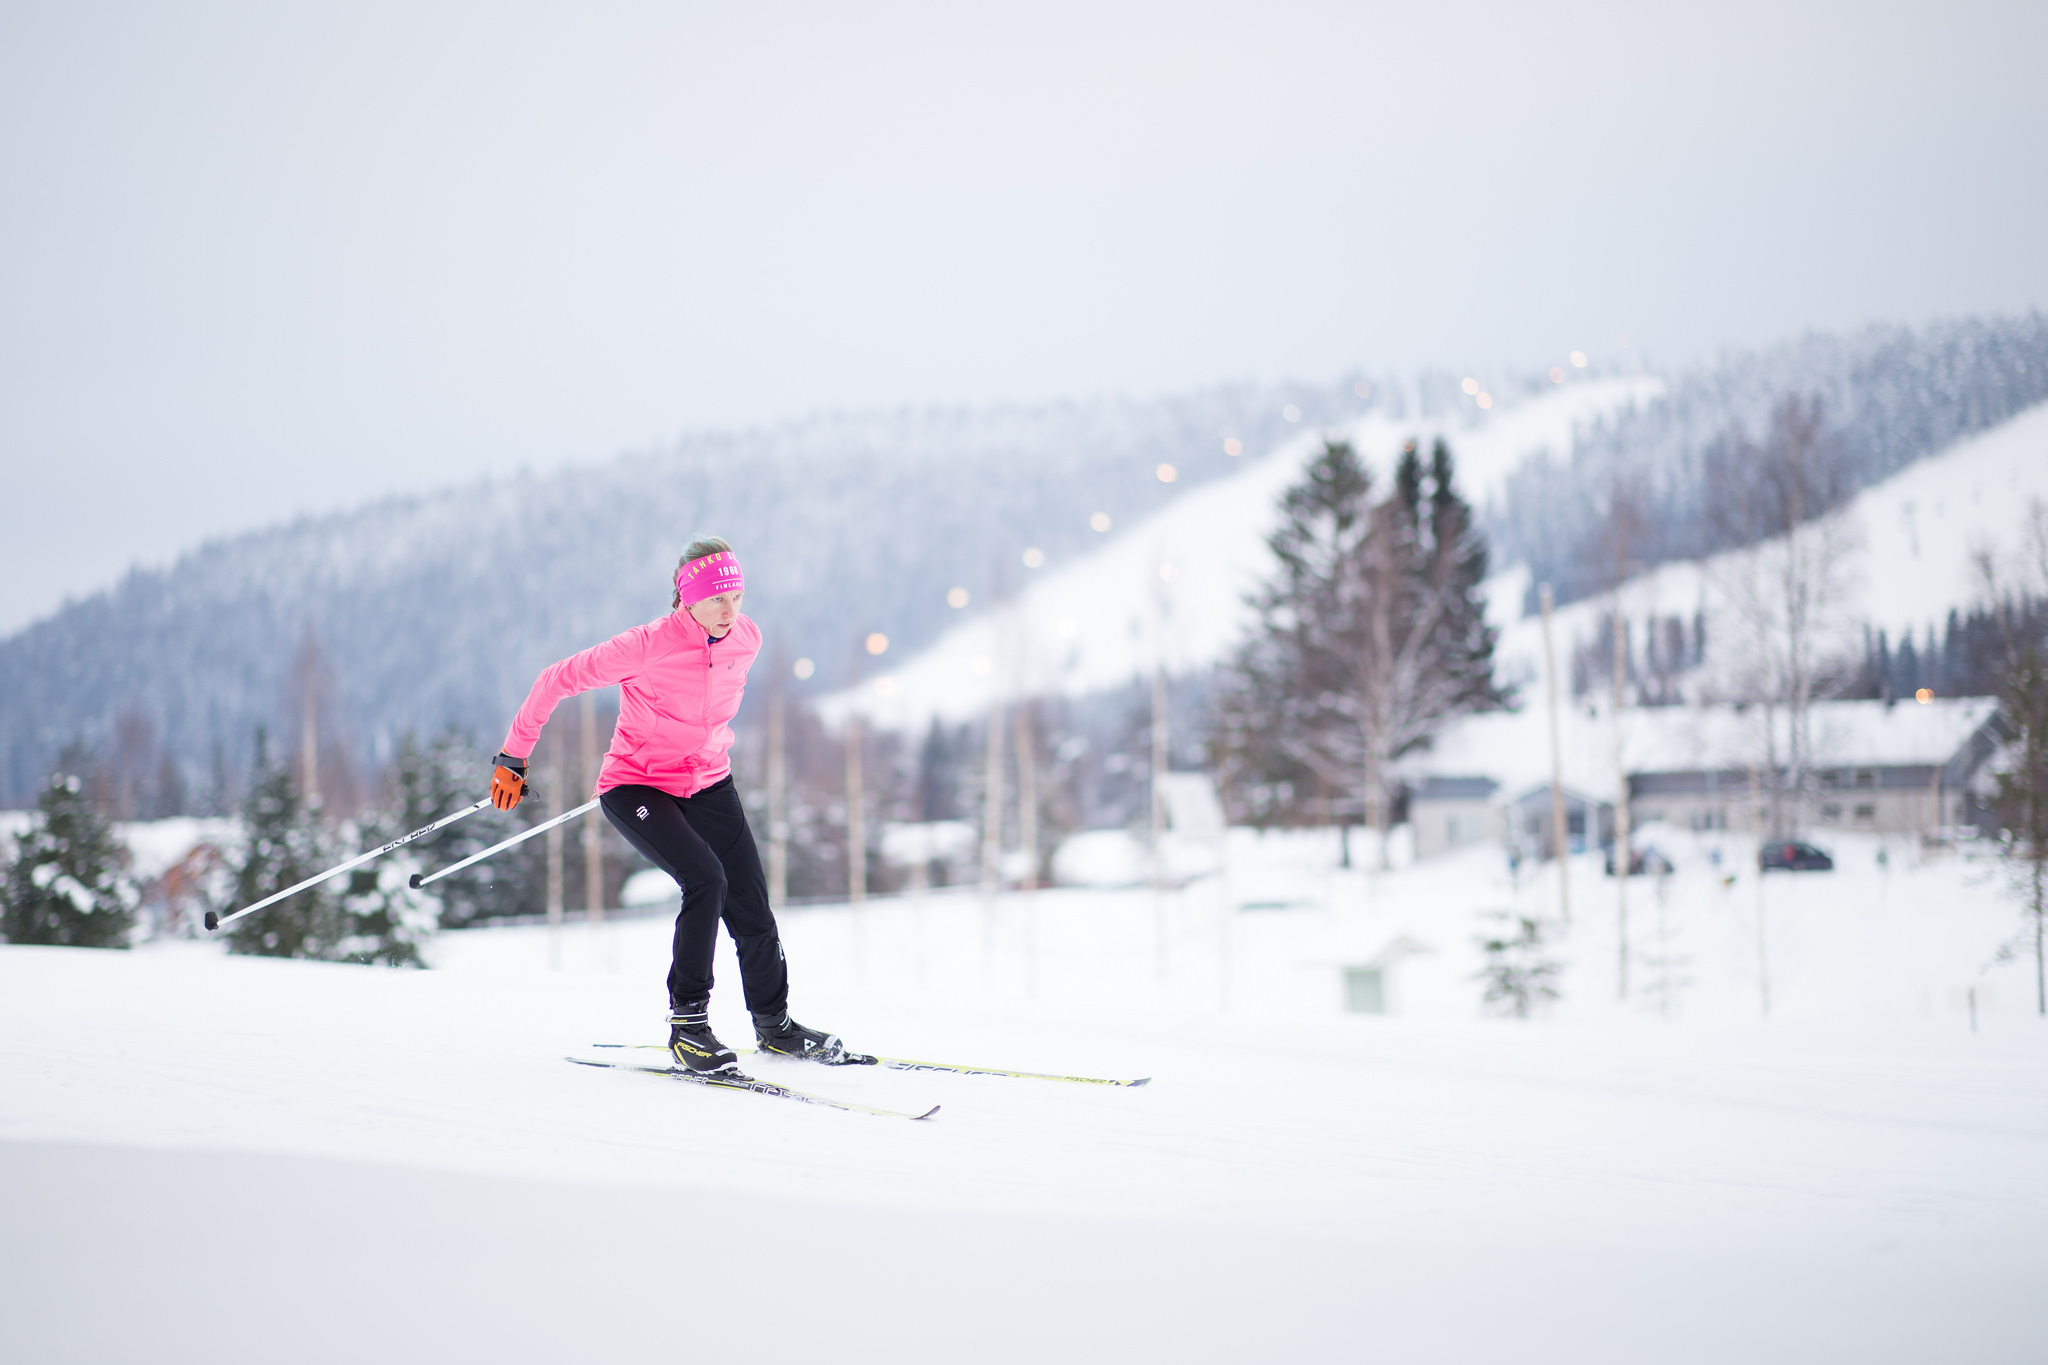 Photo: Skiier in Tahko, Finland in February. Visit Lakeland/Flickr.